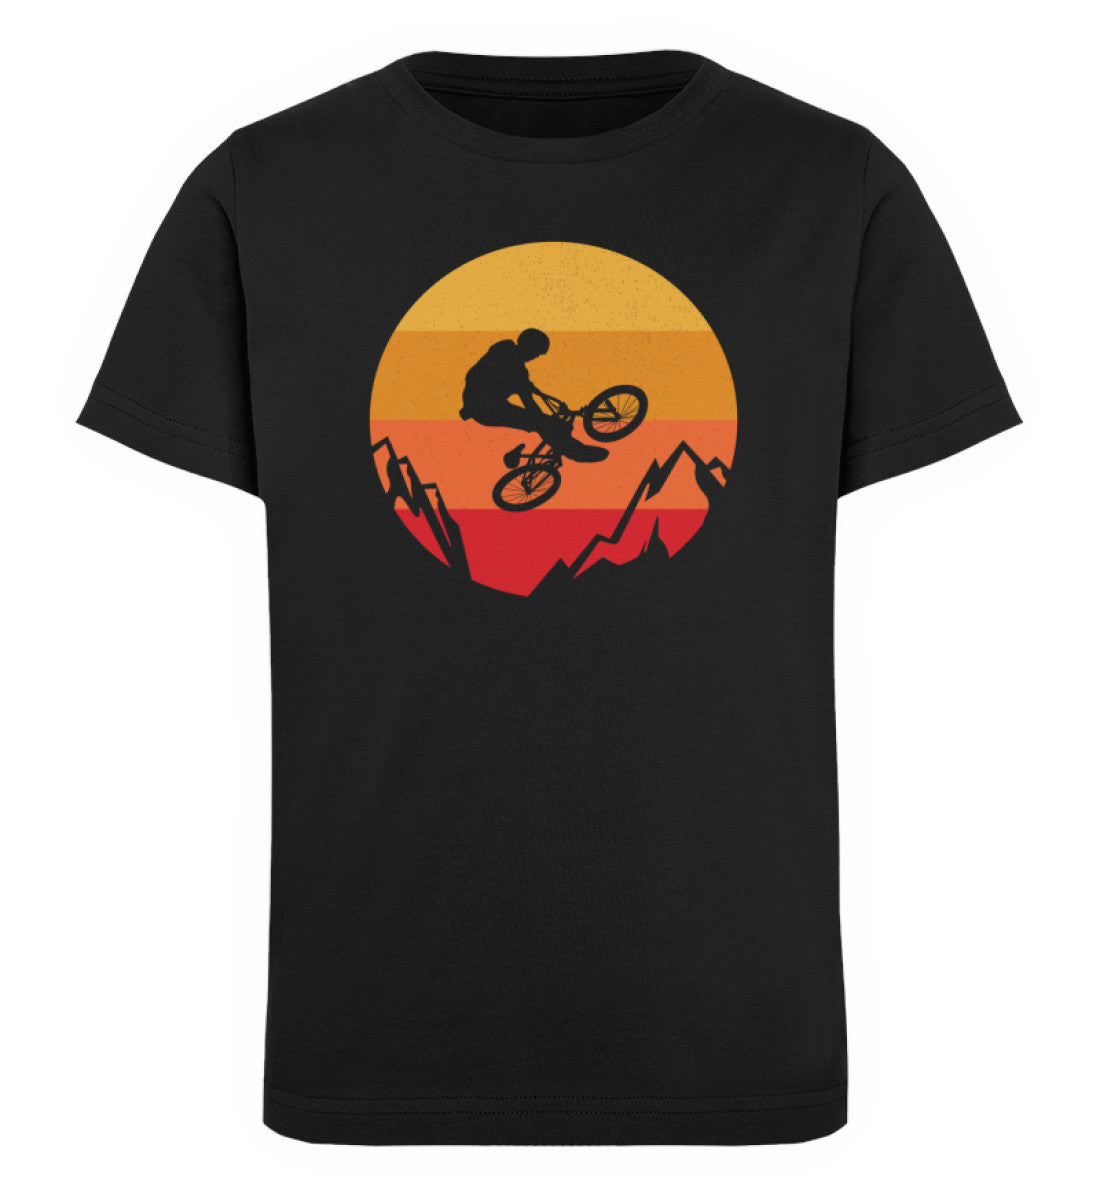 Stuntbiker - Kinder Premium Organic T-Shirt Schwarz